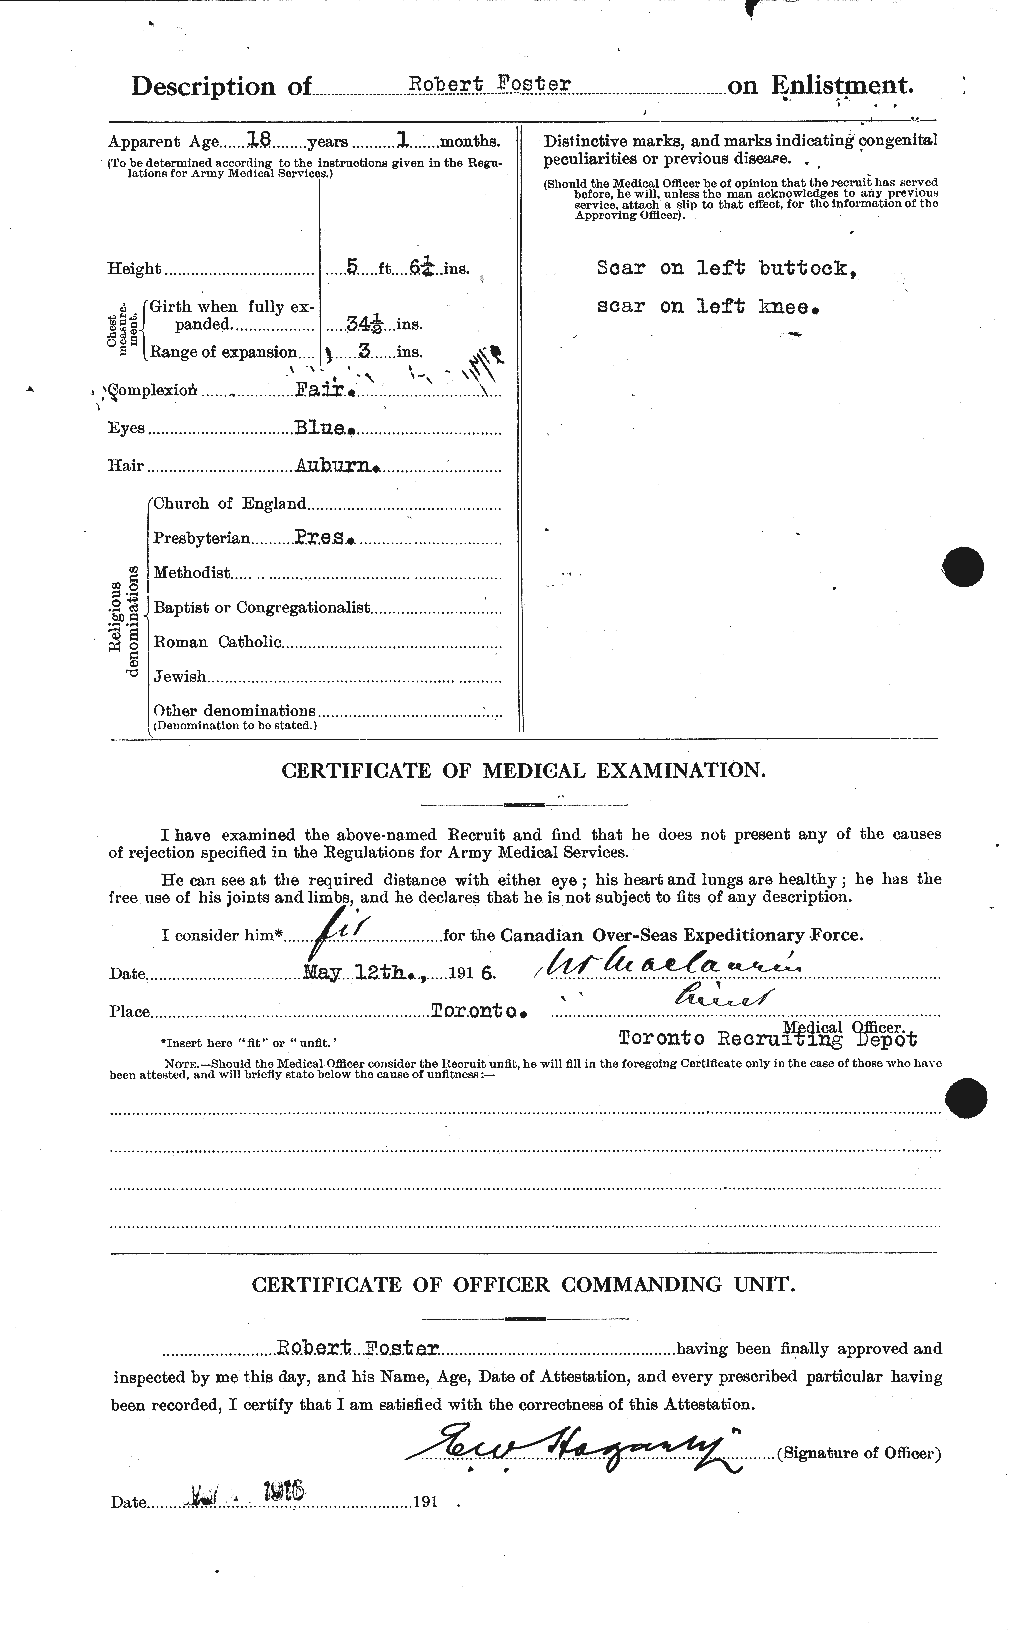 Dossiers du Personnel de la Première Guerre mondiale - CEC 335172b